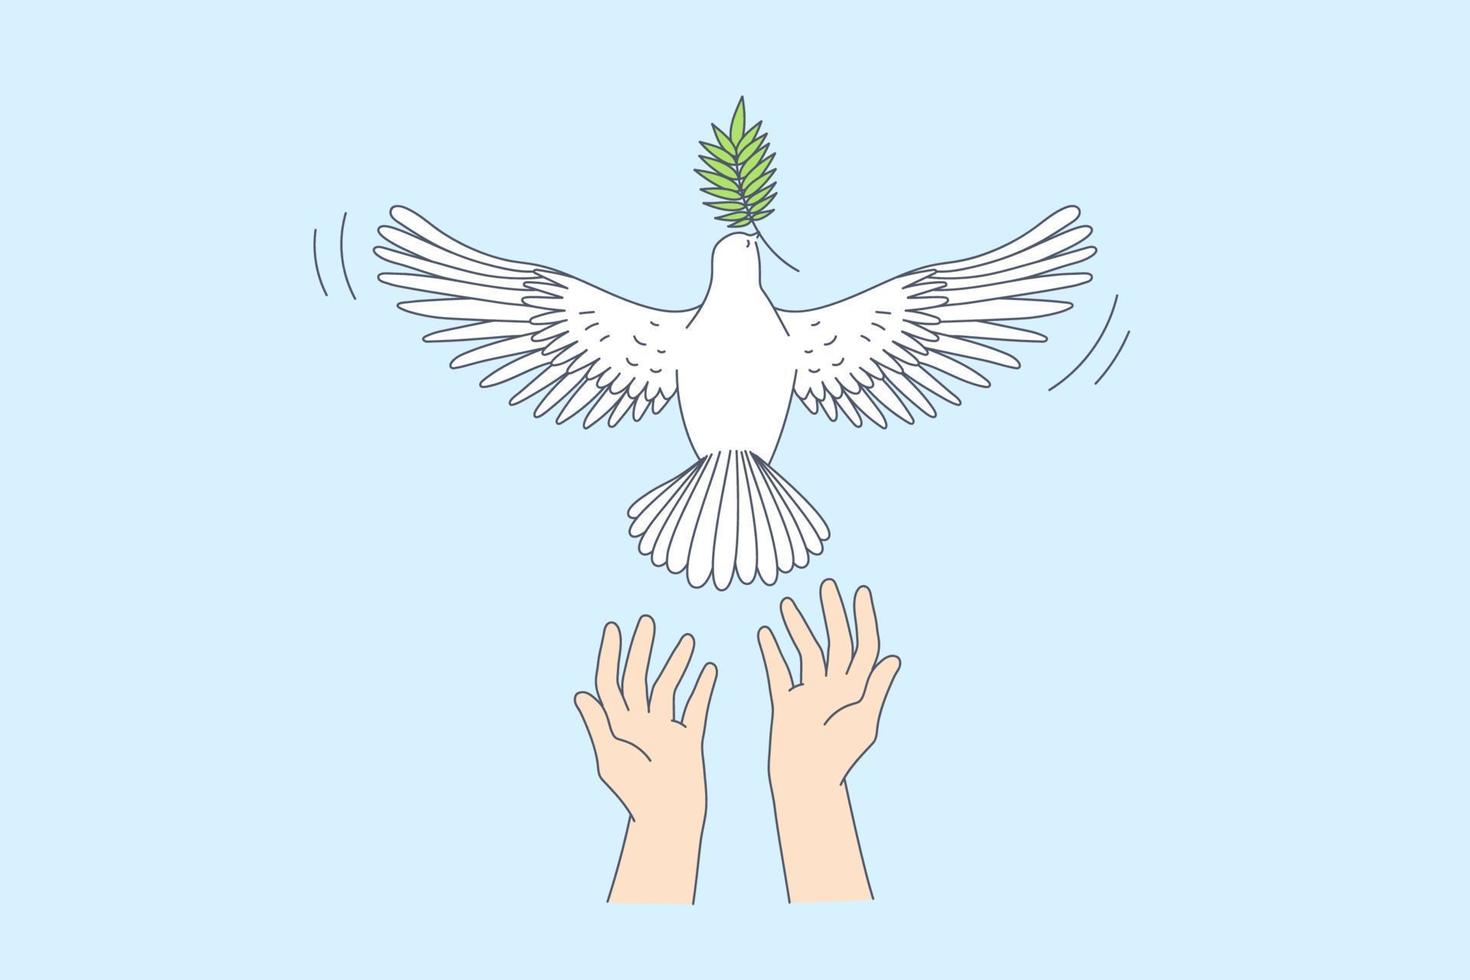 frihet och frisättande Bra Nyheter begrepp. mänsklig händer uthyrning vit duva med grön blad i näbb gå över blå himmel bakgrund vektor illustration